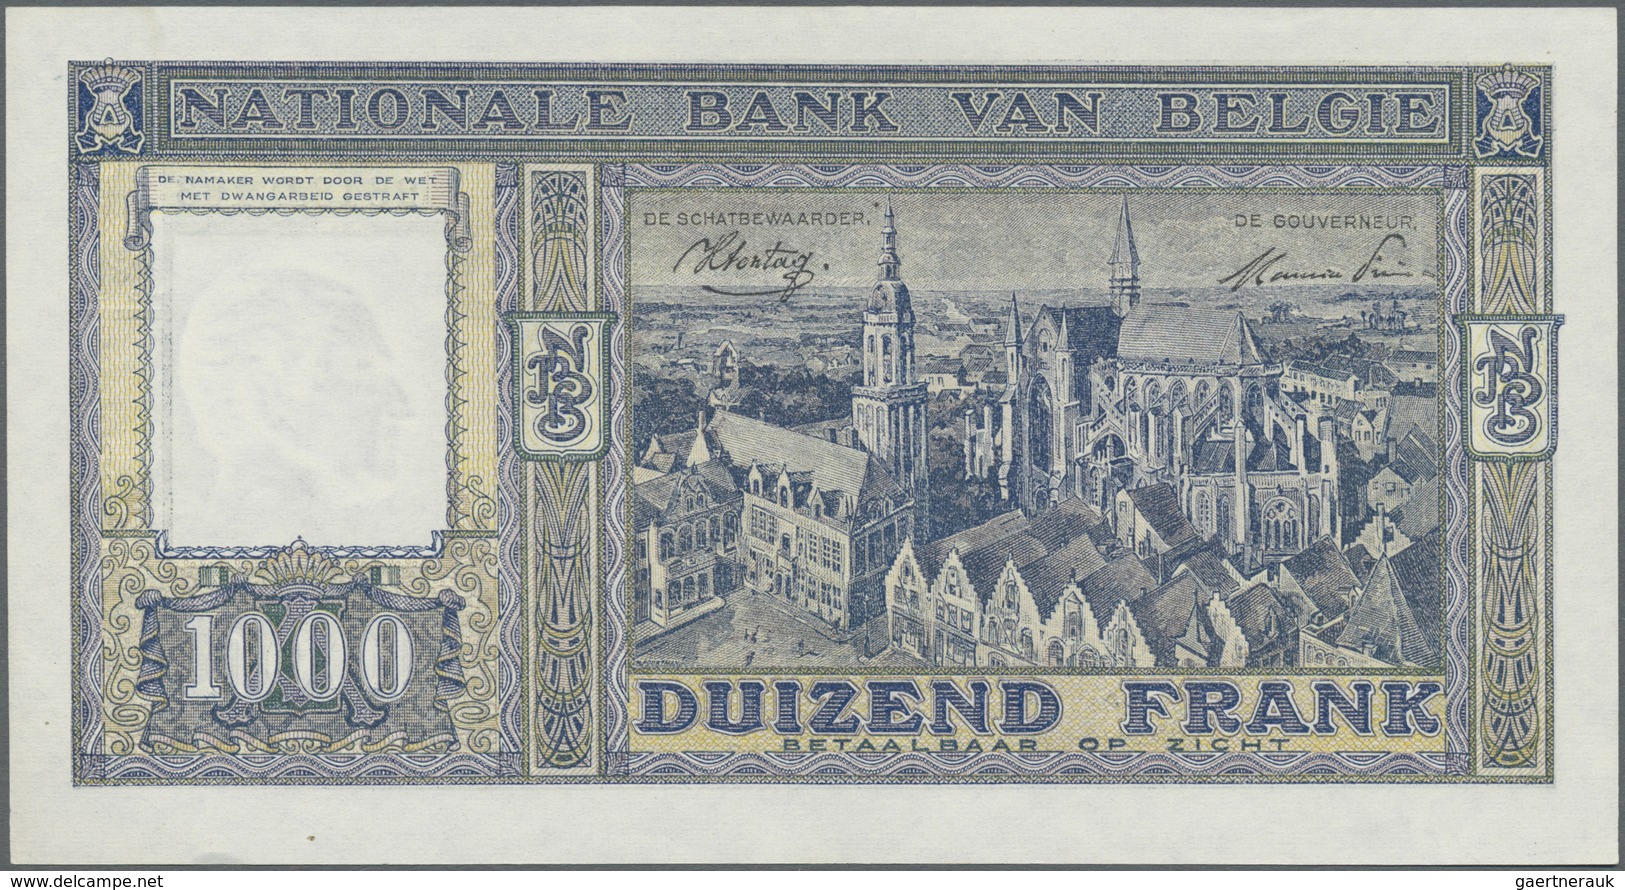 Belgium / Belgien: 1000 Francs 1945 P. 128b, In Condition: AUNC. - [ 1] …-1830 : Prima Dell'Indipendenza